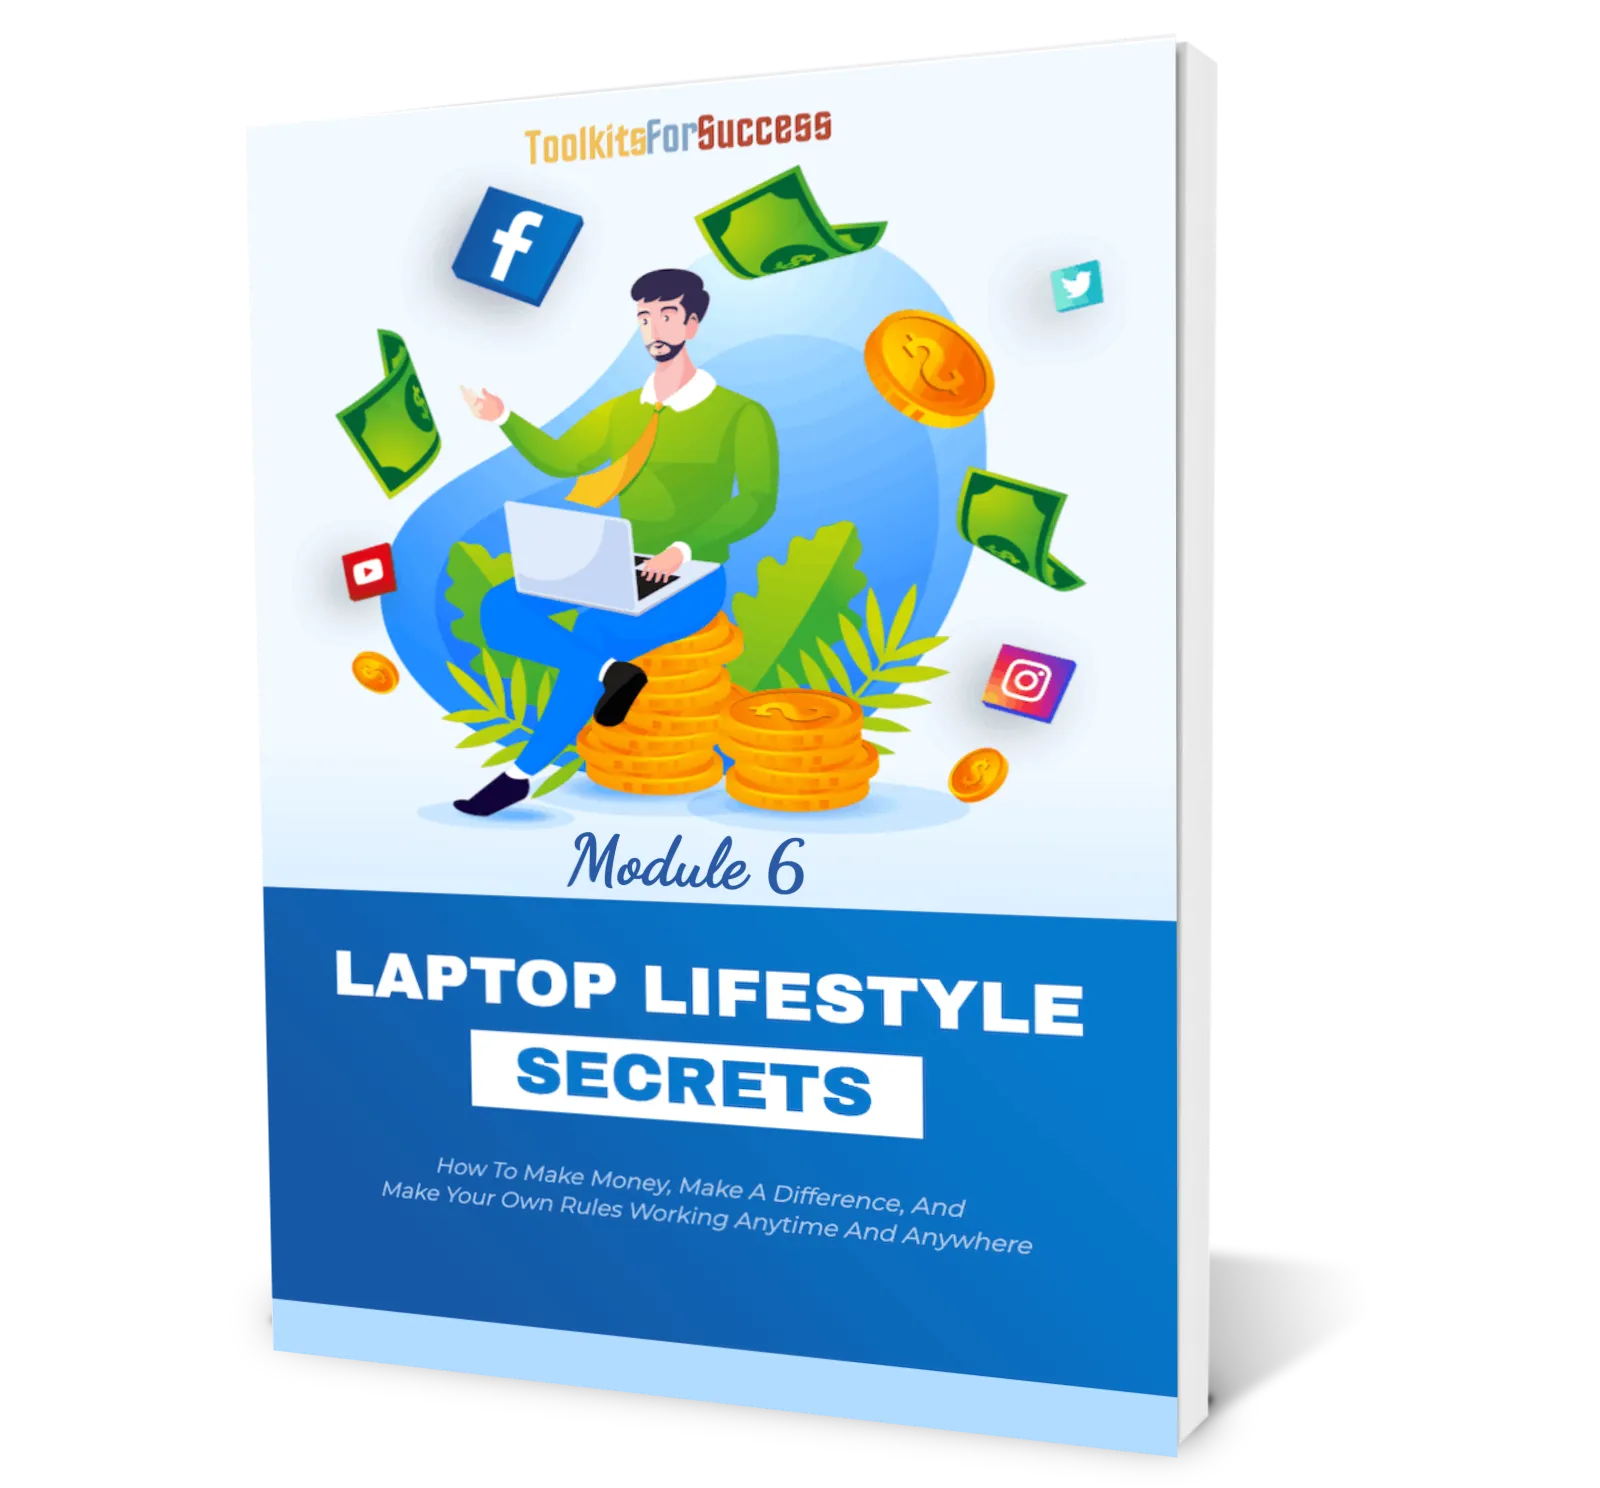 Laptop Lifestyle Secrets Module 6